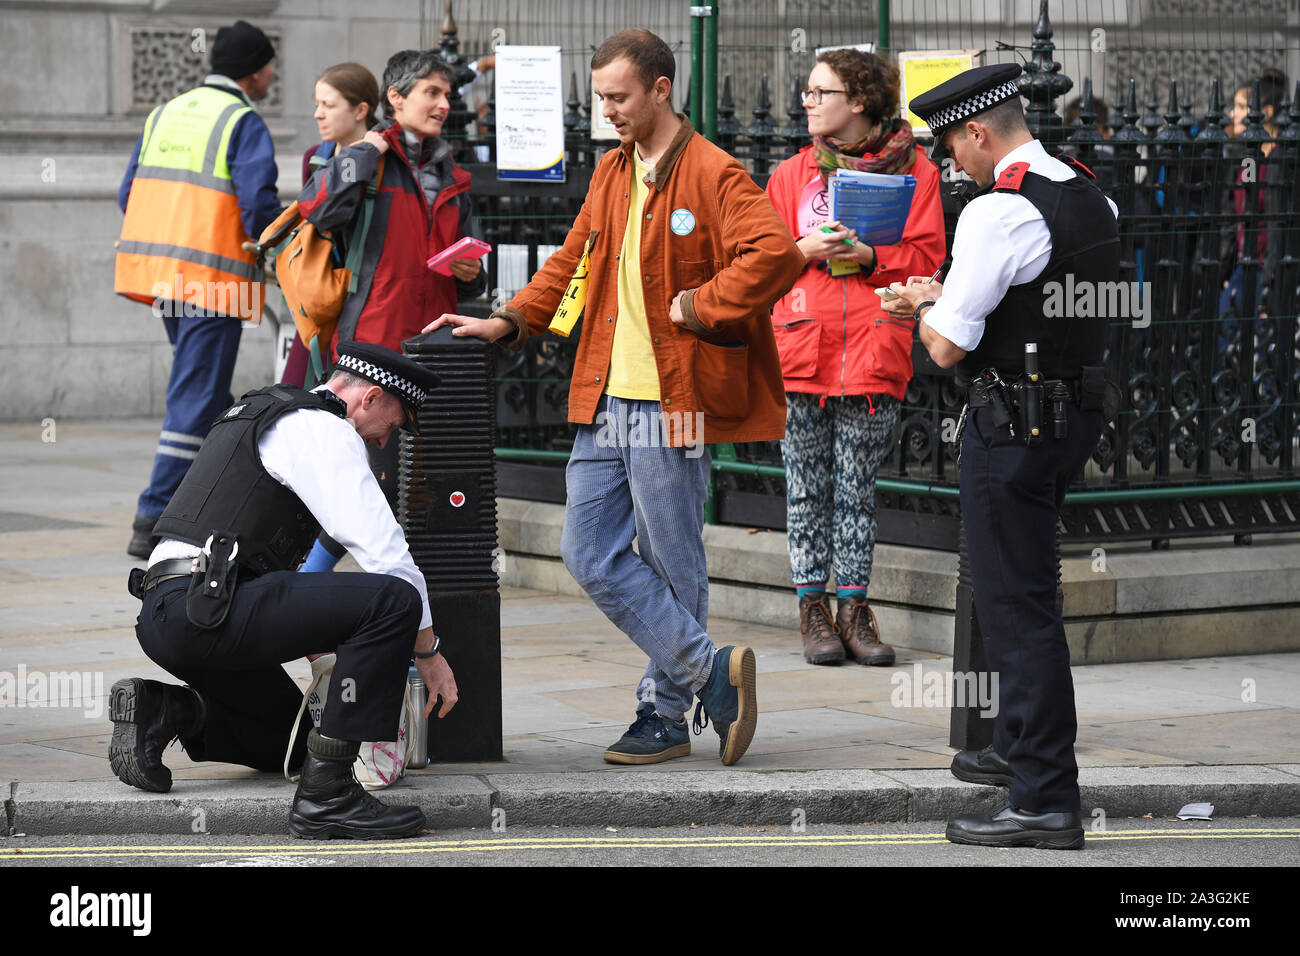 L'Extinction d'une rébellion (XR) manifestant a son sac fouillé par la police à la place du Parlement, Westminster, Londres, comme le changement climatique continue de protestation dans un deuxième jour. Banque D'Images